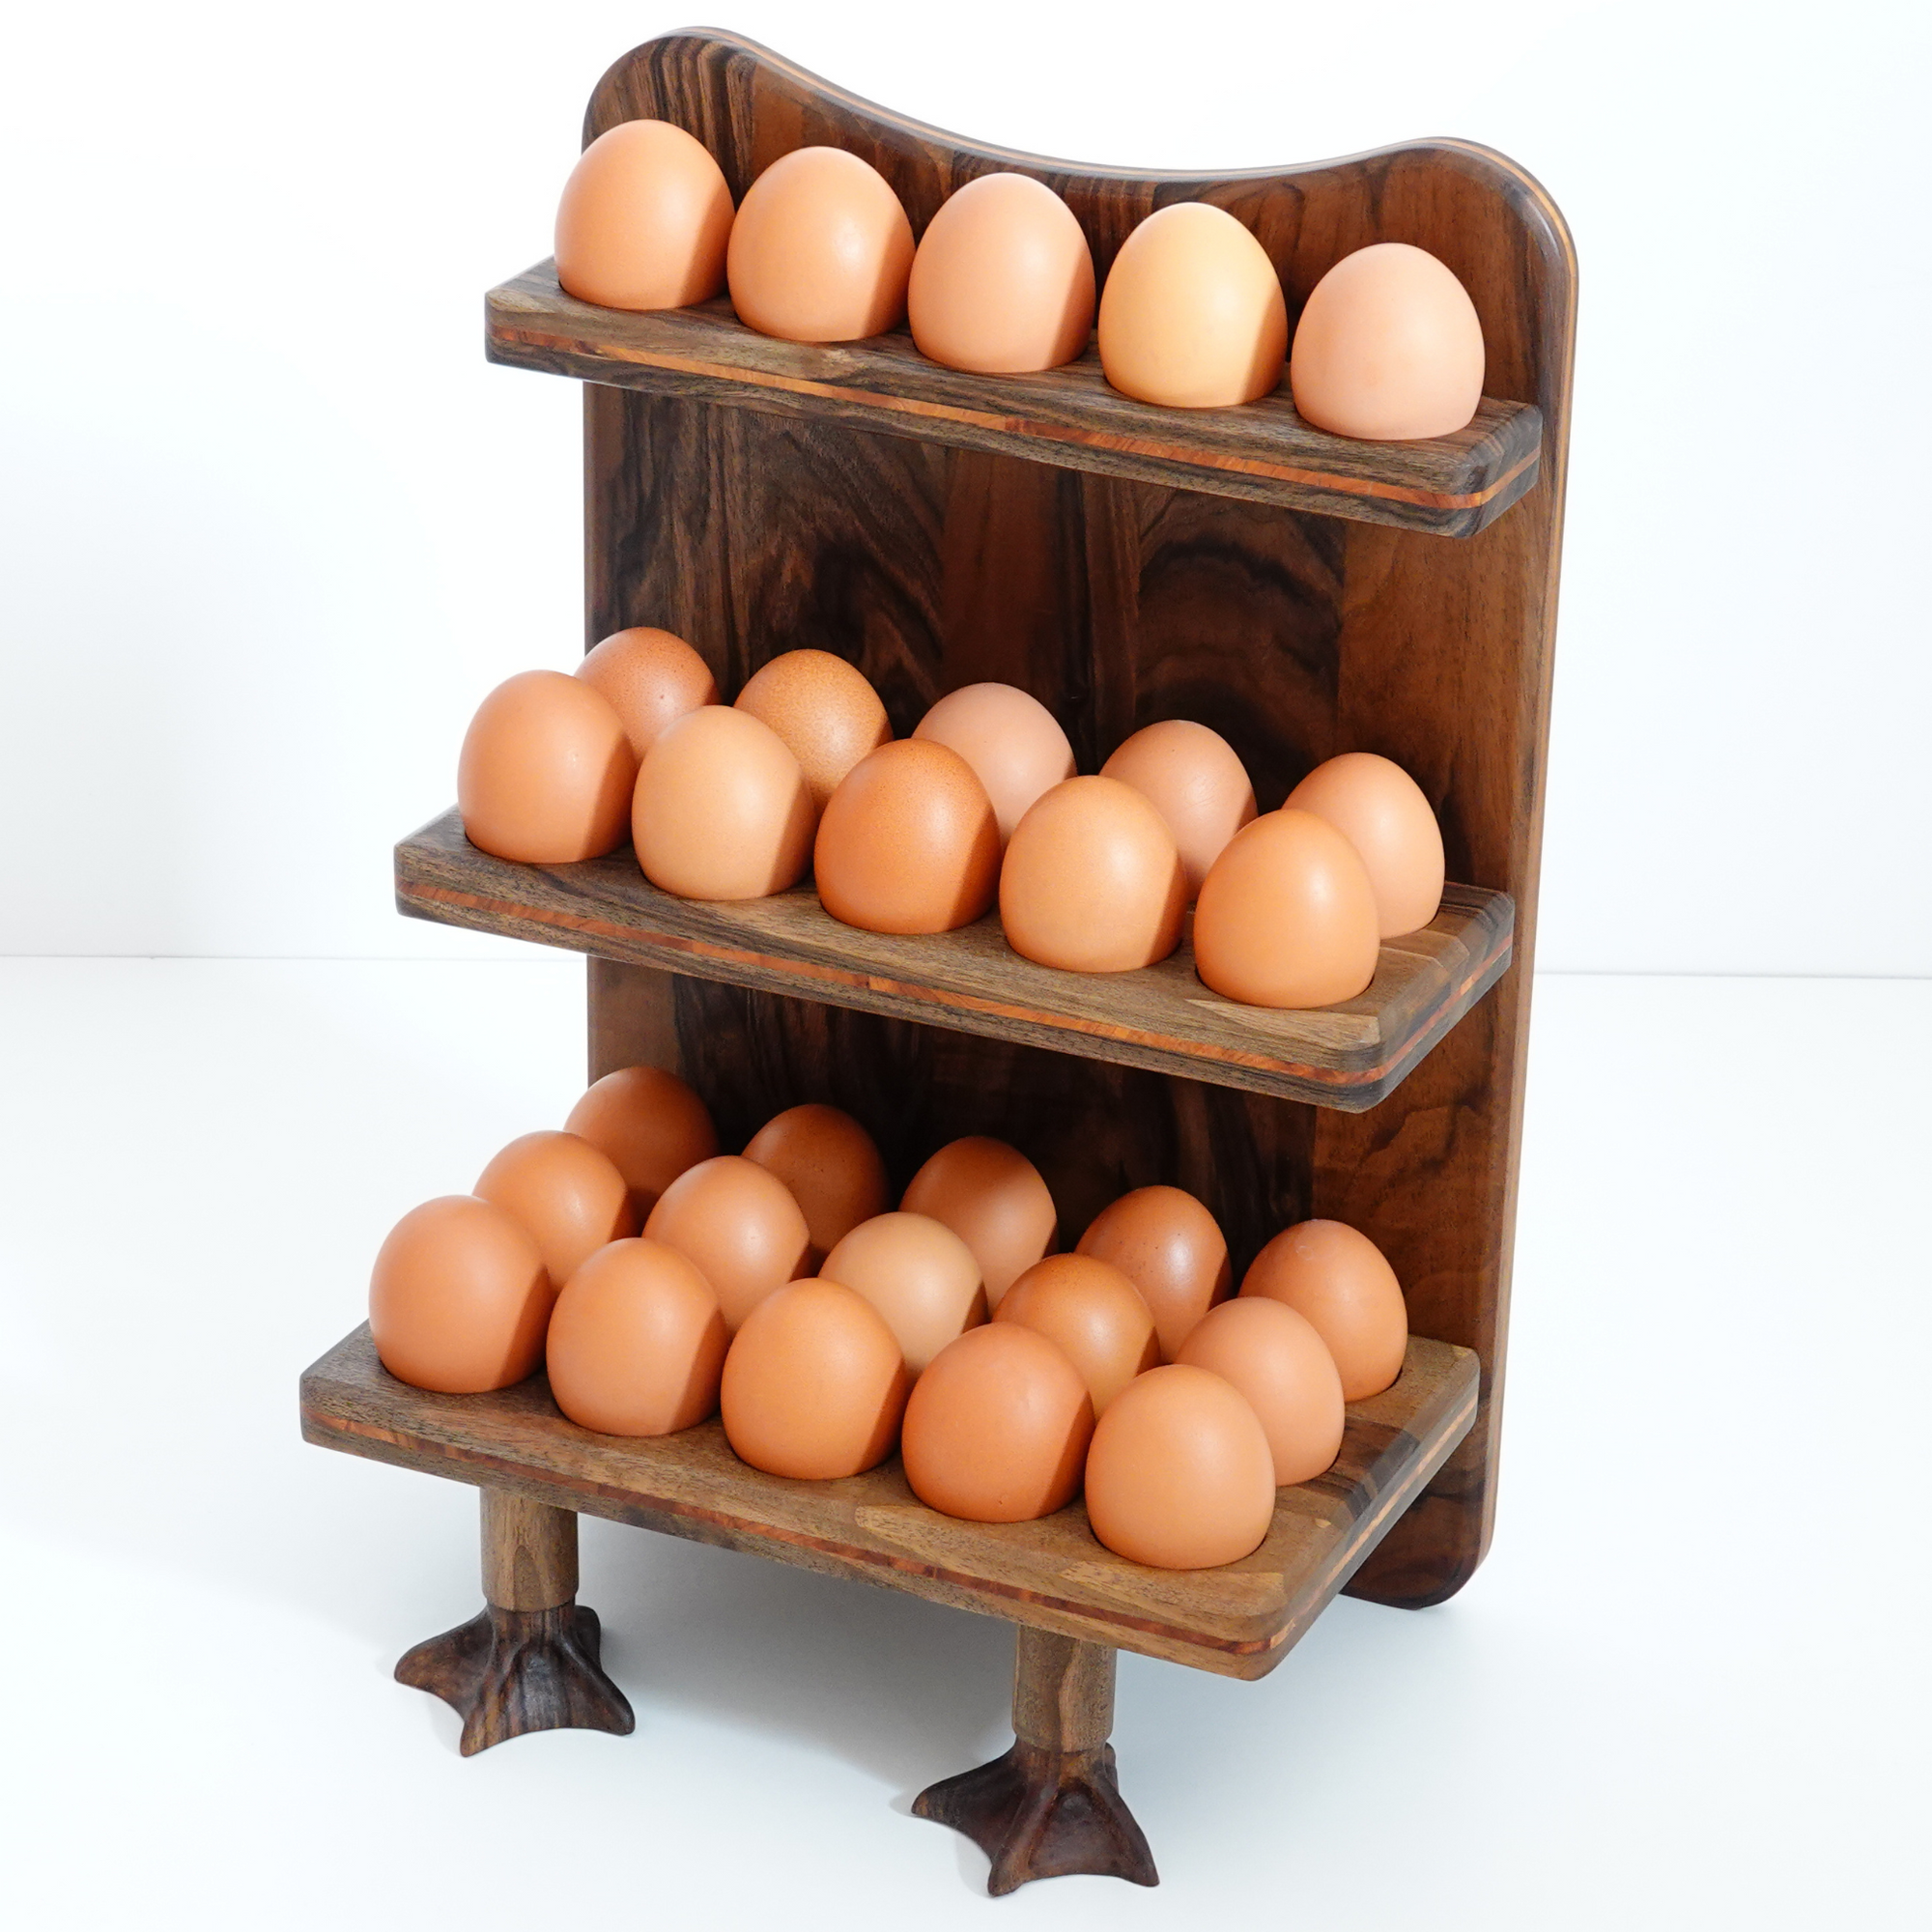 Rustic egg holder. Farmhouse Wood Egg Holder. Egg stand. Wooden